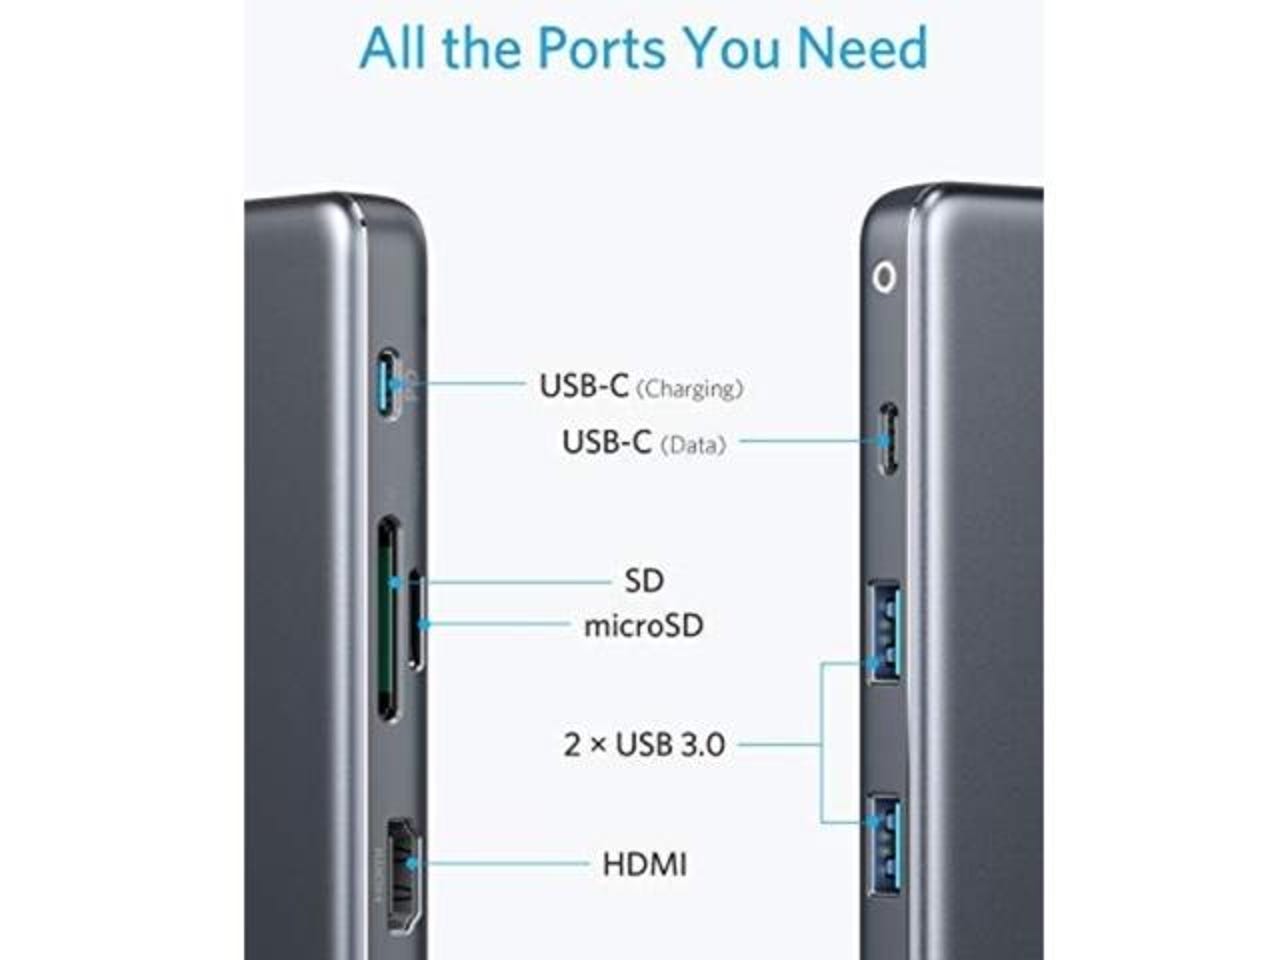 Anker 7-in-1 USB-C hub